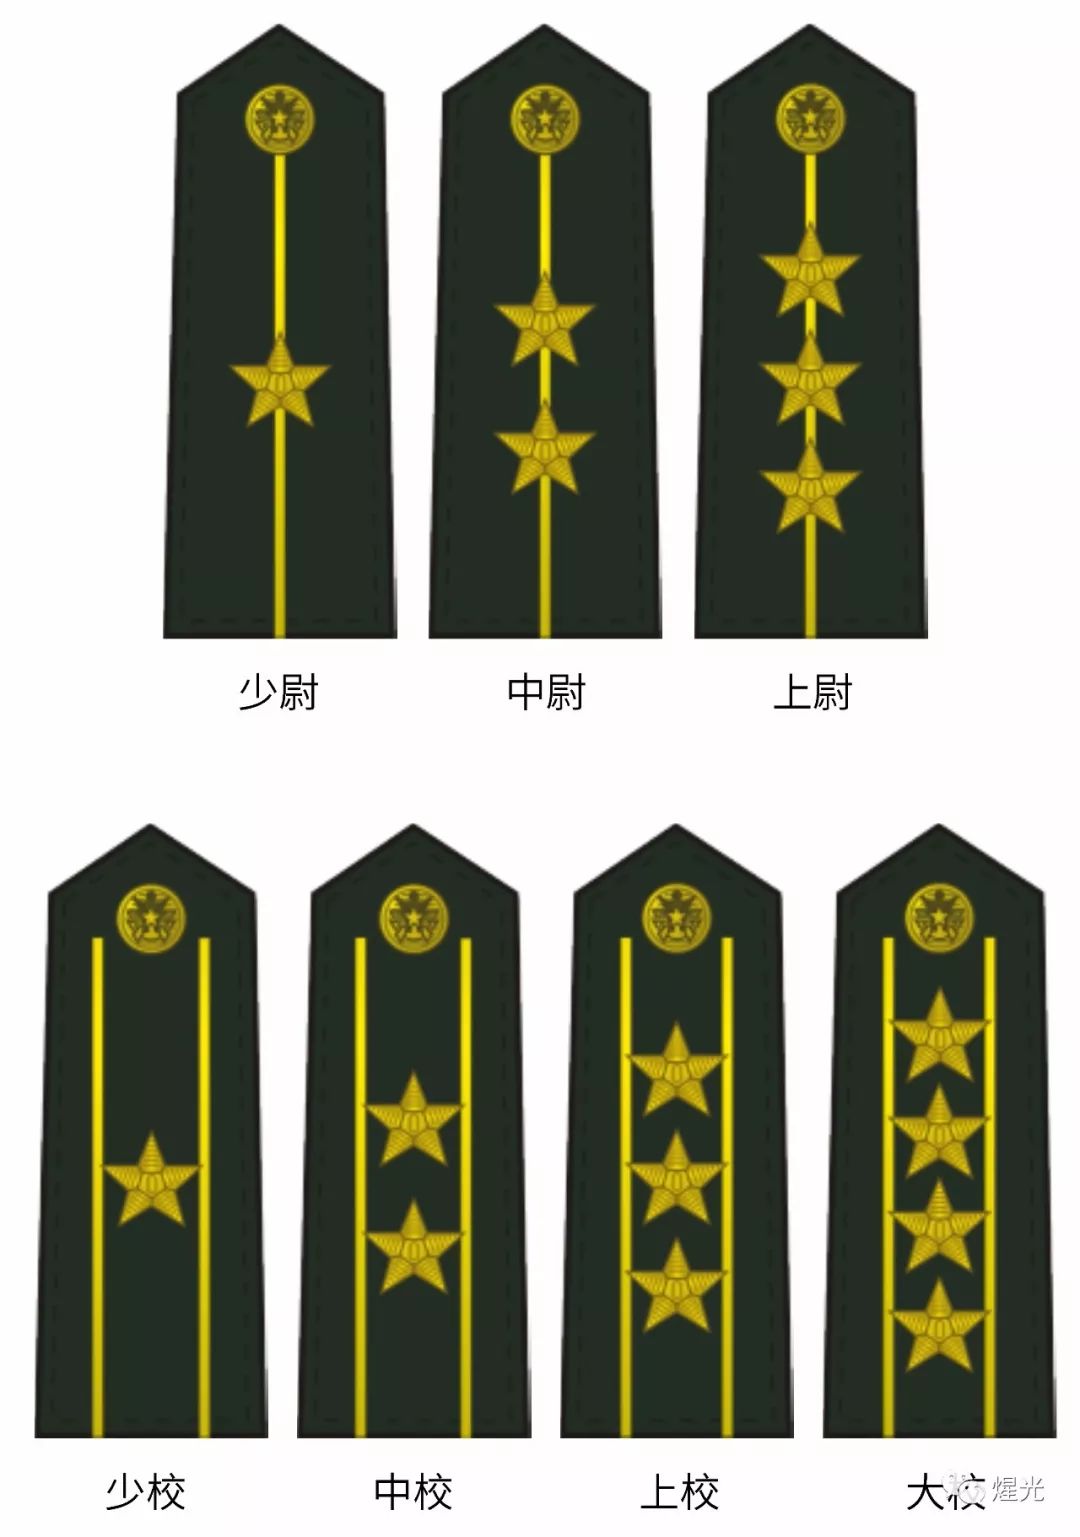 武警部队与解放军实行相同的军衔制度.